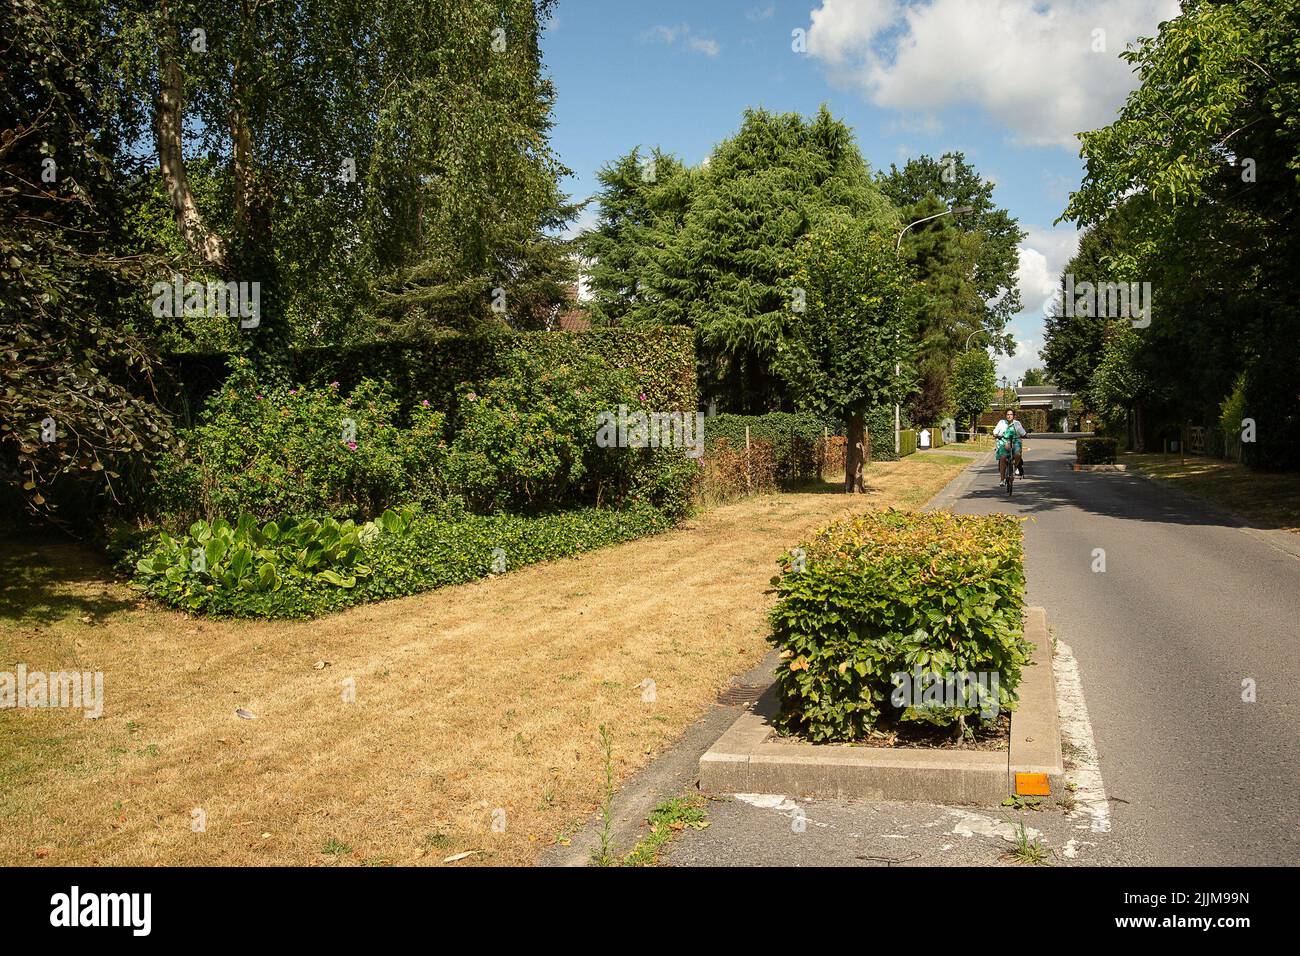 L'illustration montre l'herbe sèche photographiée à Sint-Martens-Latem, le mercredi 27 juillet 2022. De graves sécheresses affectent l'Europe depuis le début de l'année. BELGA PHOTO JAMES ARTHUR GEKIERE Banque D'Images